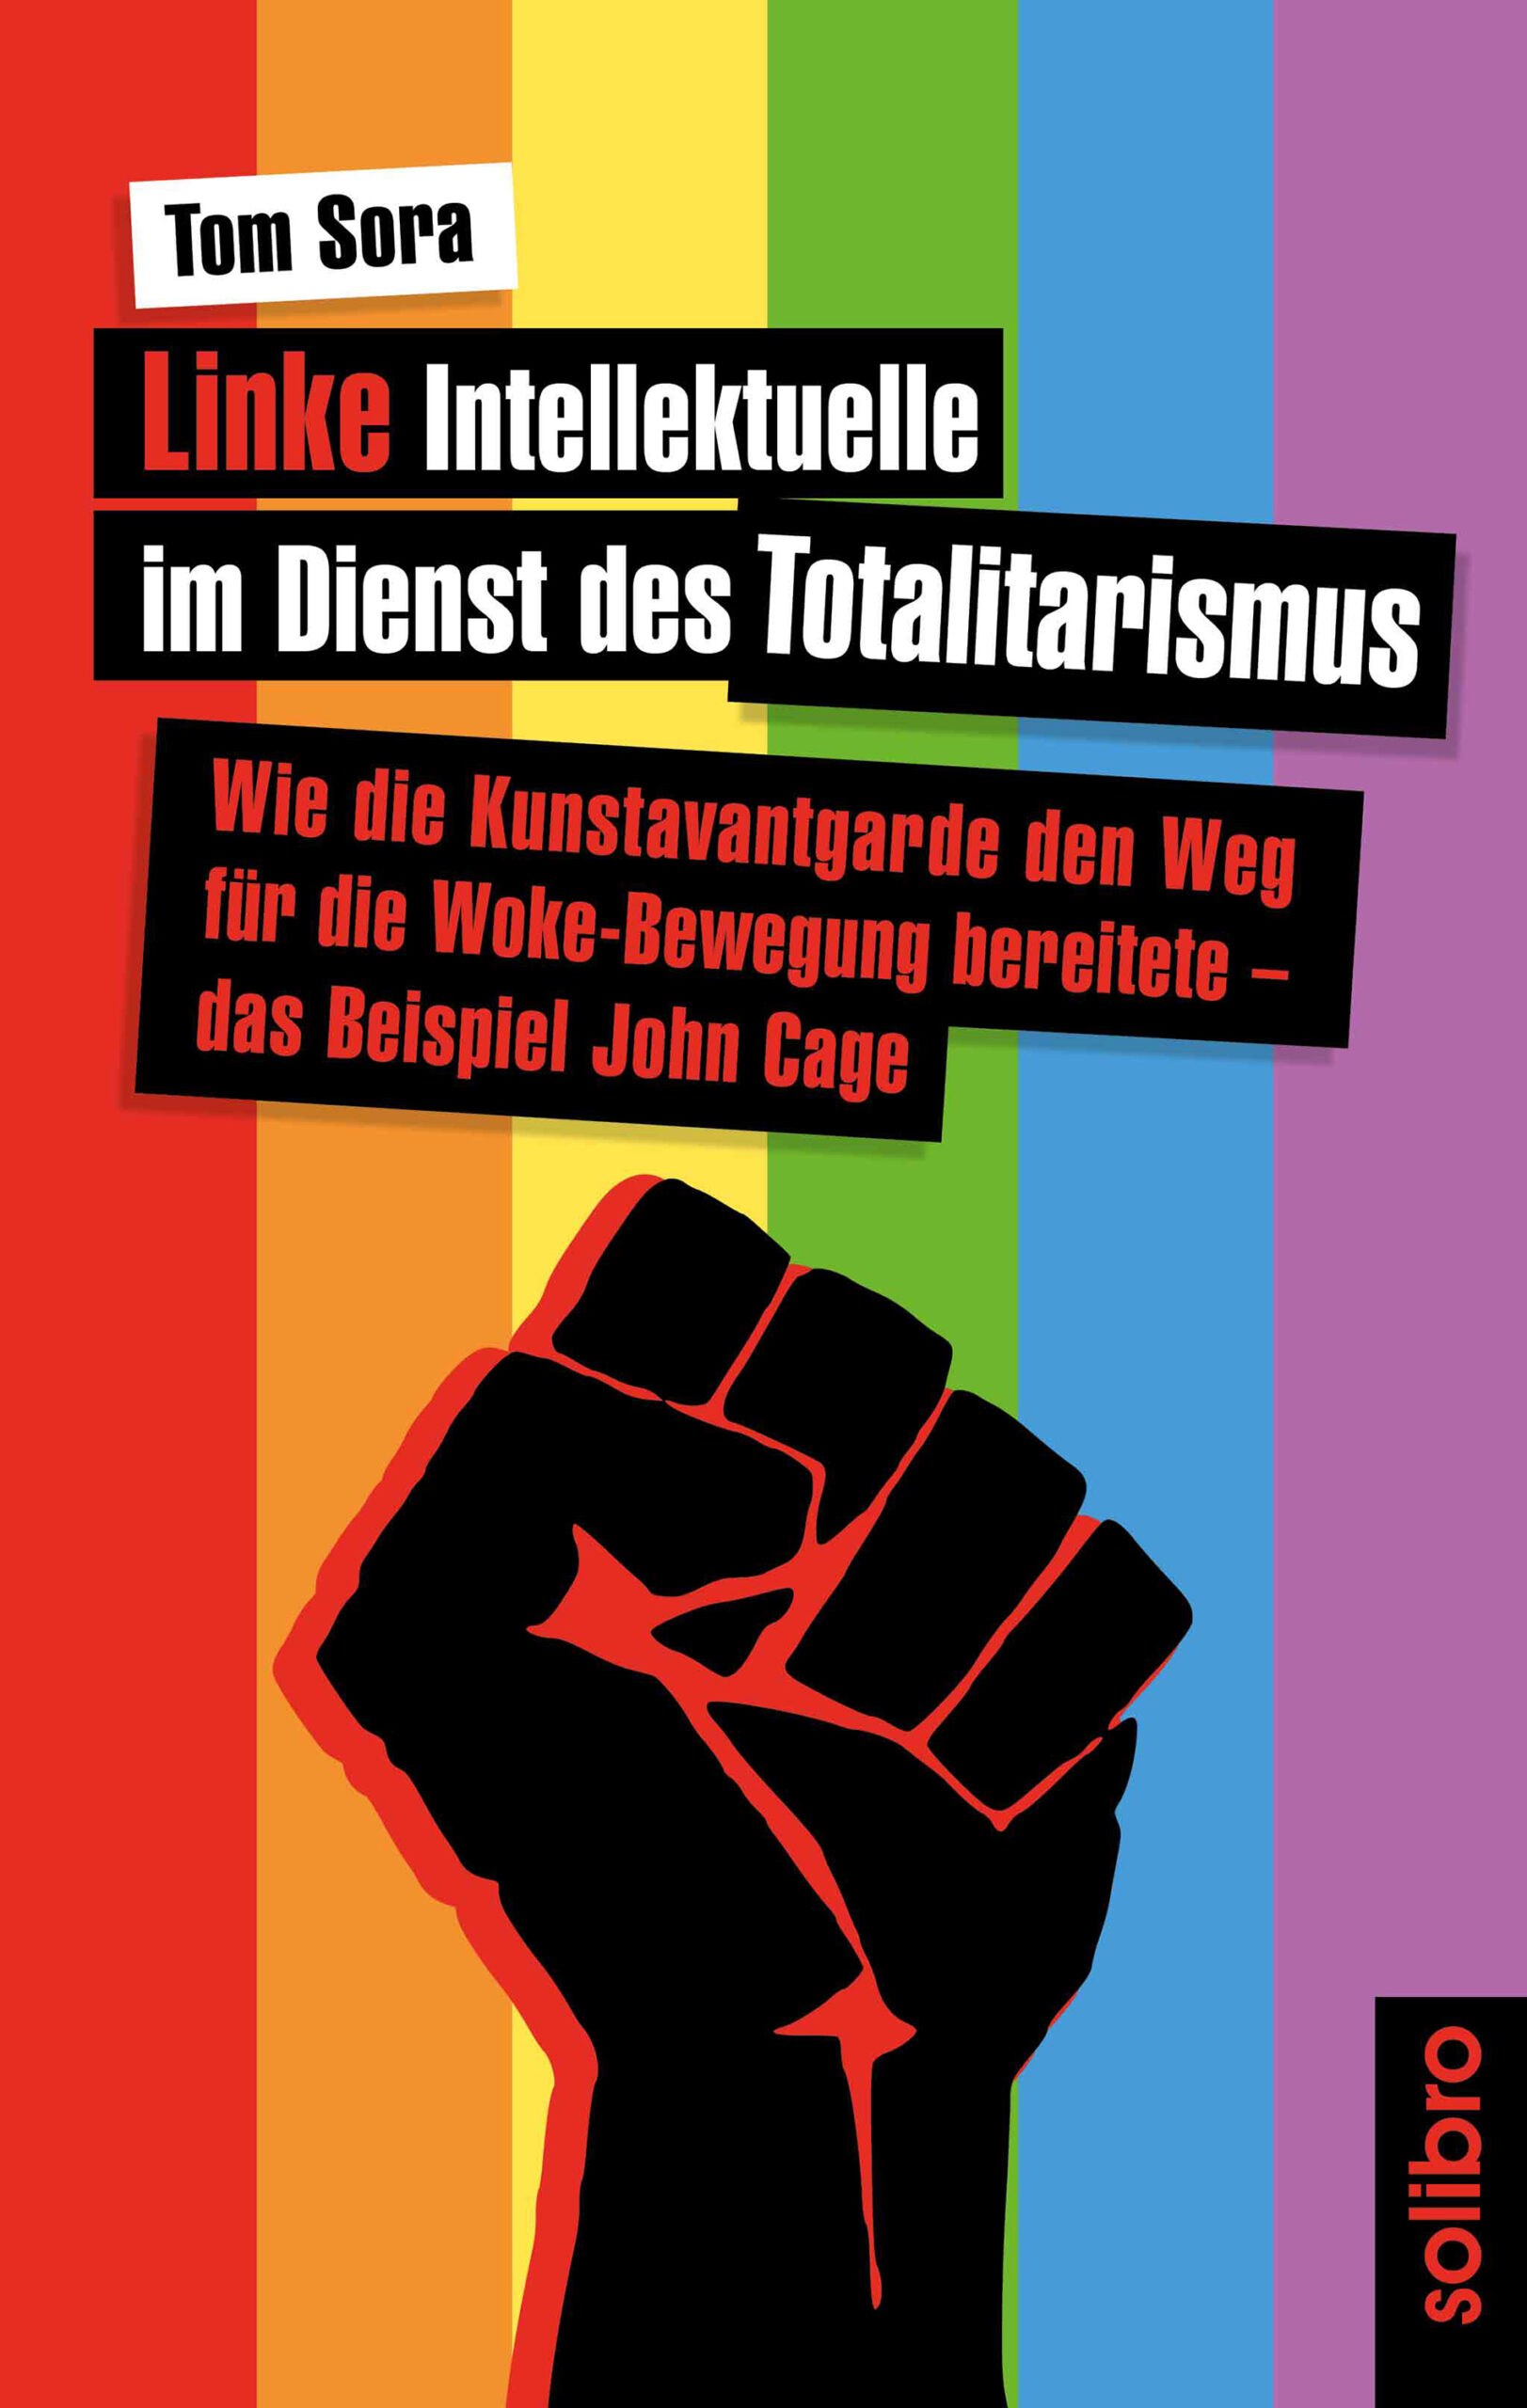 ISBN 978-3-96079-104-1 (Die Bildrechte liegen bei dem Verfasser der Mitteilung.)